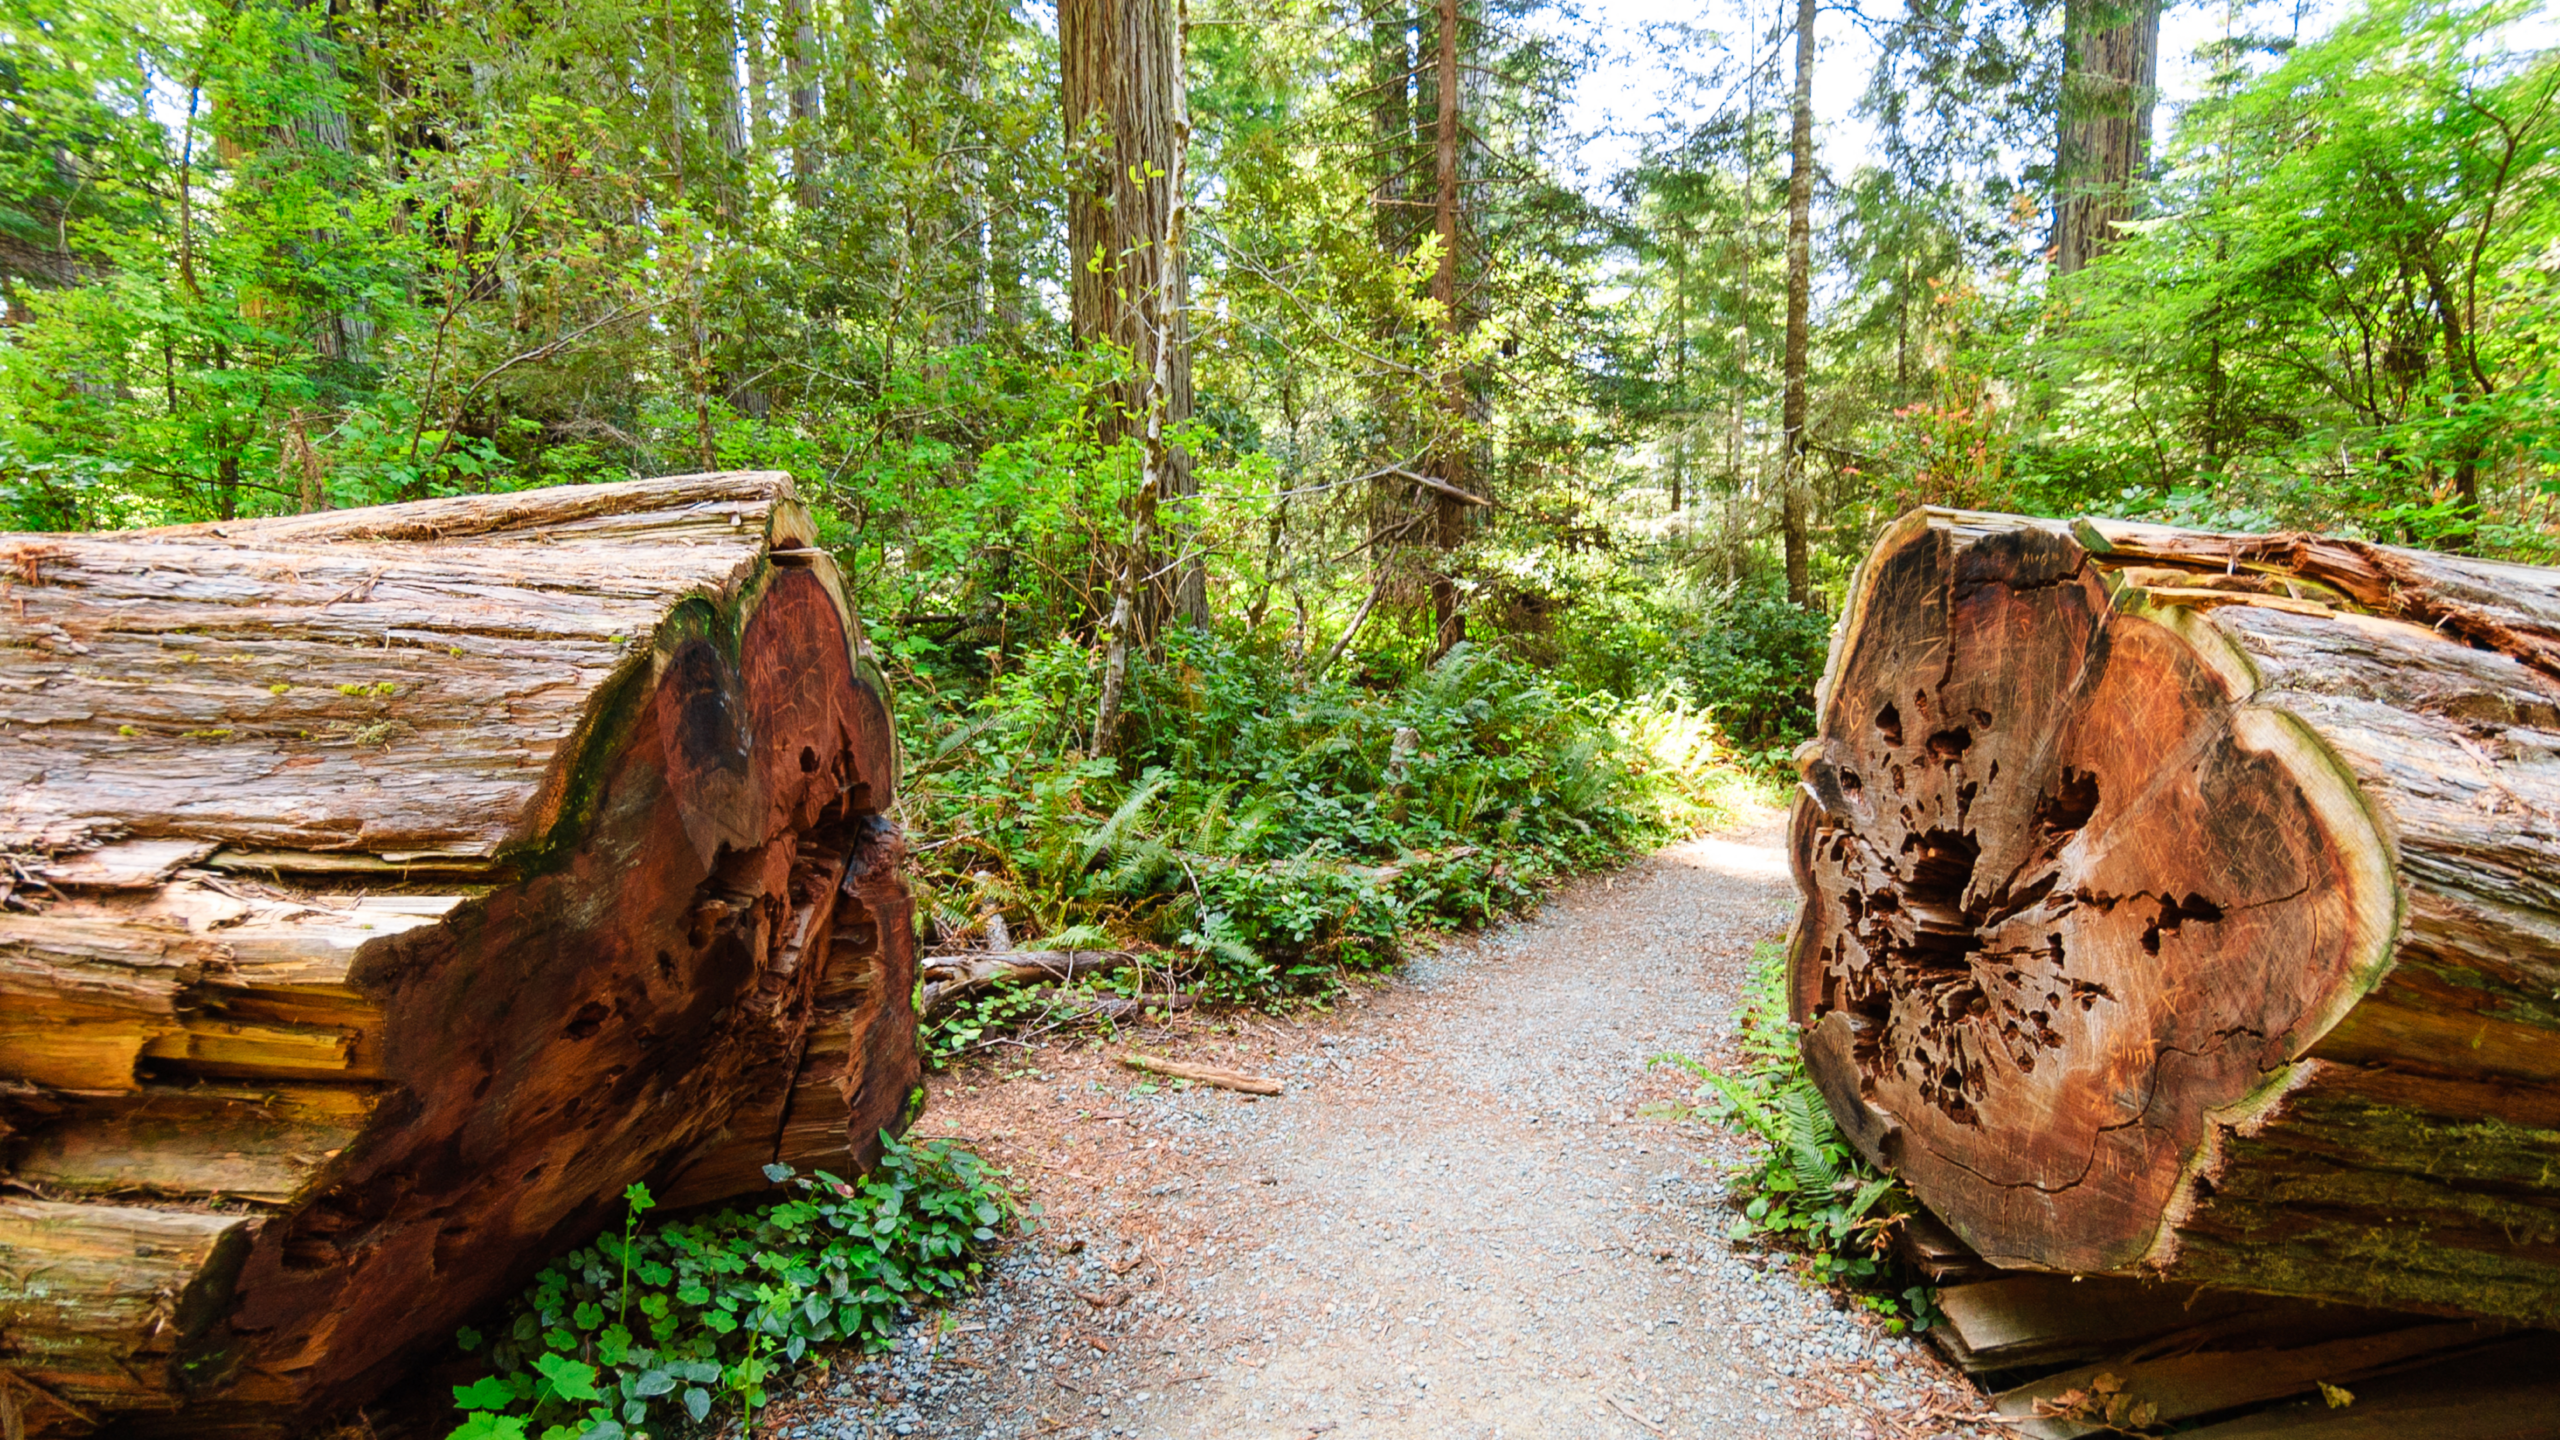 a big redwood log cut in half and a dirt path between